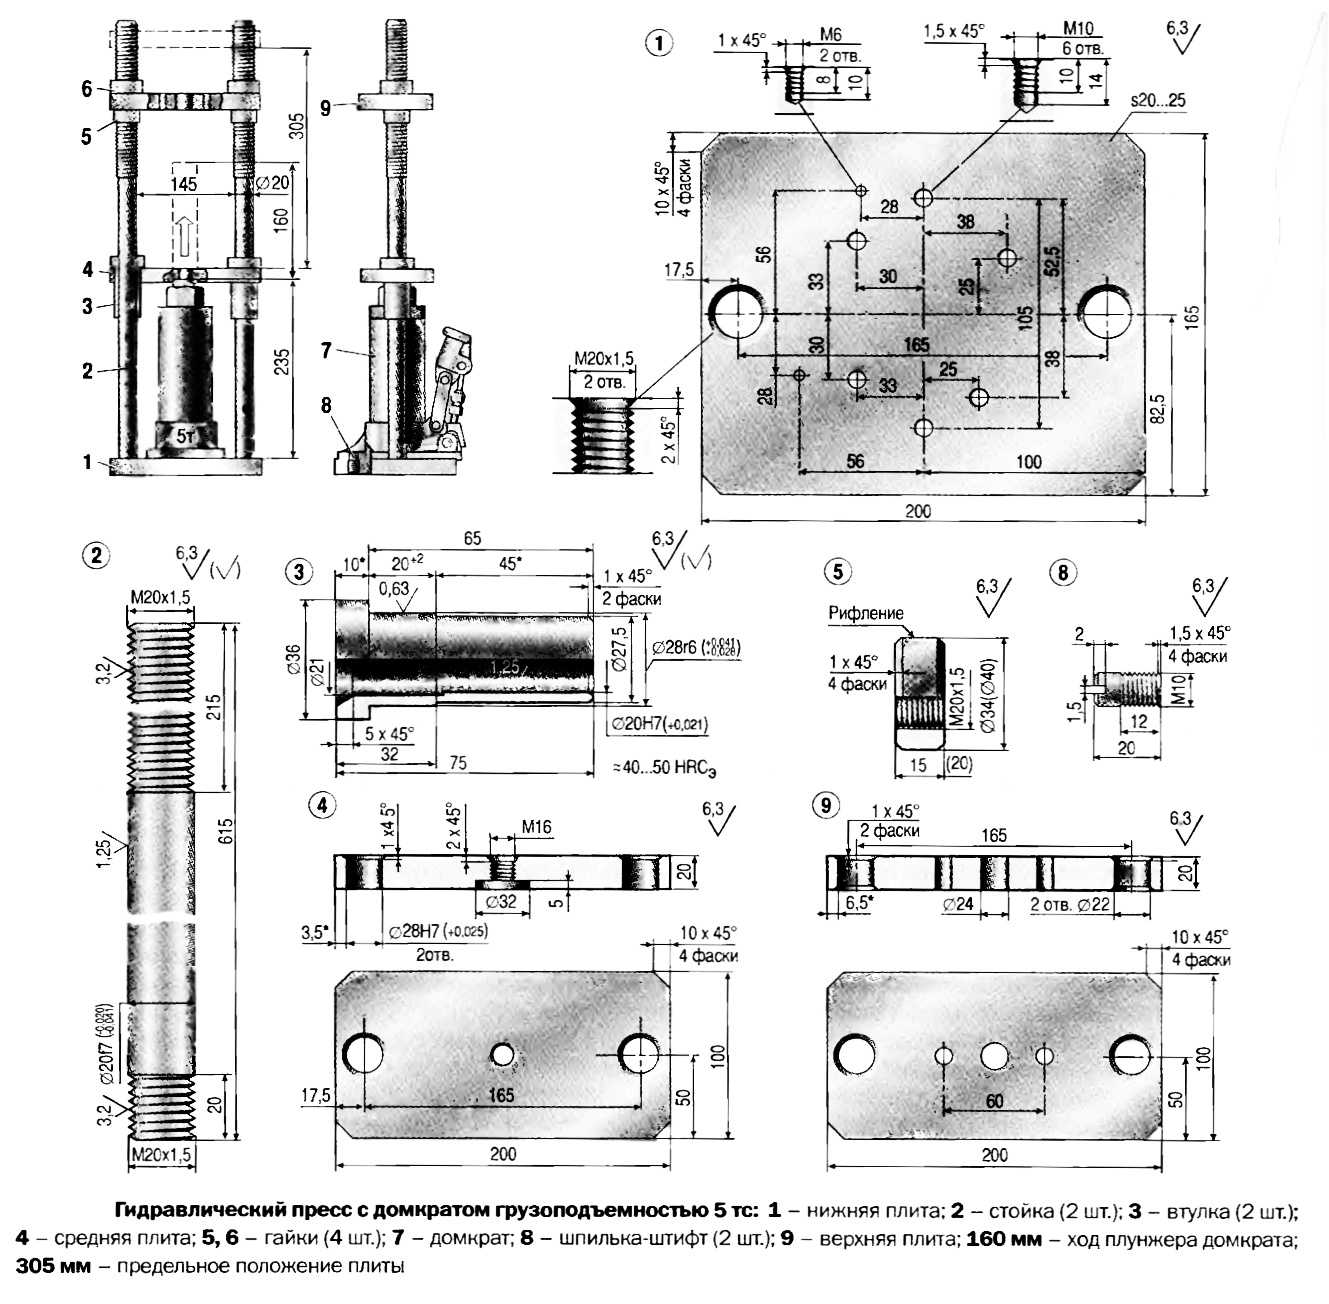 Пресс для топливных брикетов - типы станков и изготовление самостоятельно